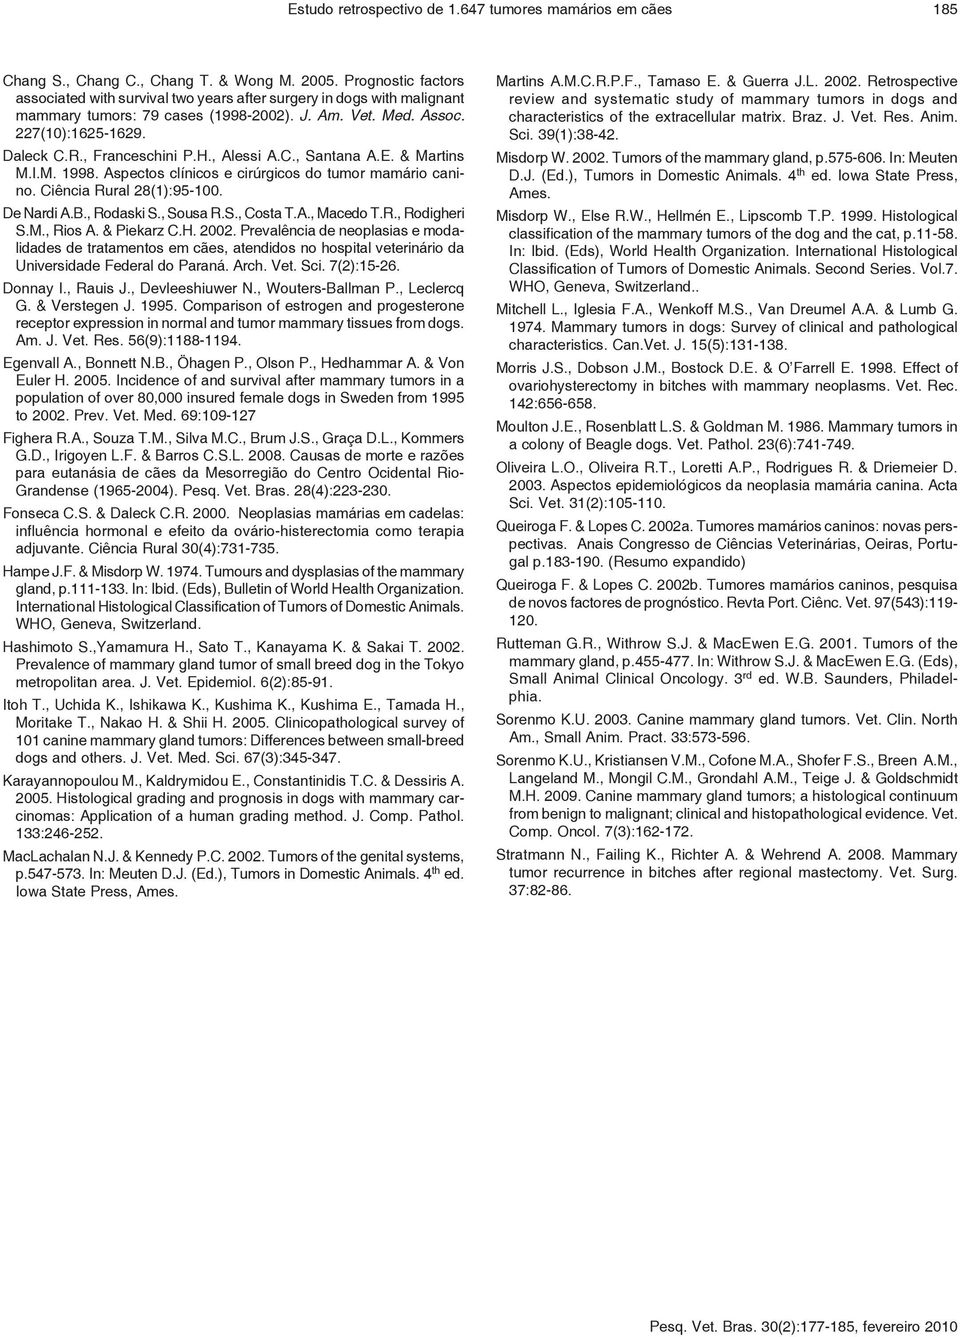 H., Alessi A.C., Santana A.E. & Martins M.I.M. 1998. Aspectos clínicos e cirúrgicos do tumor mamário canino. Ciência Rural 28(1):95-100. De Nardi A.B., Rodaski S., Sousa R.S., Costa T.A., Macedo T.R., Rodigheri S.